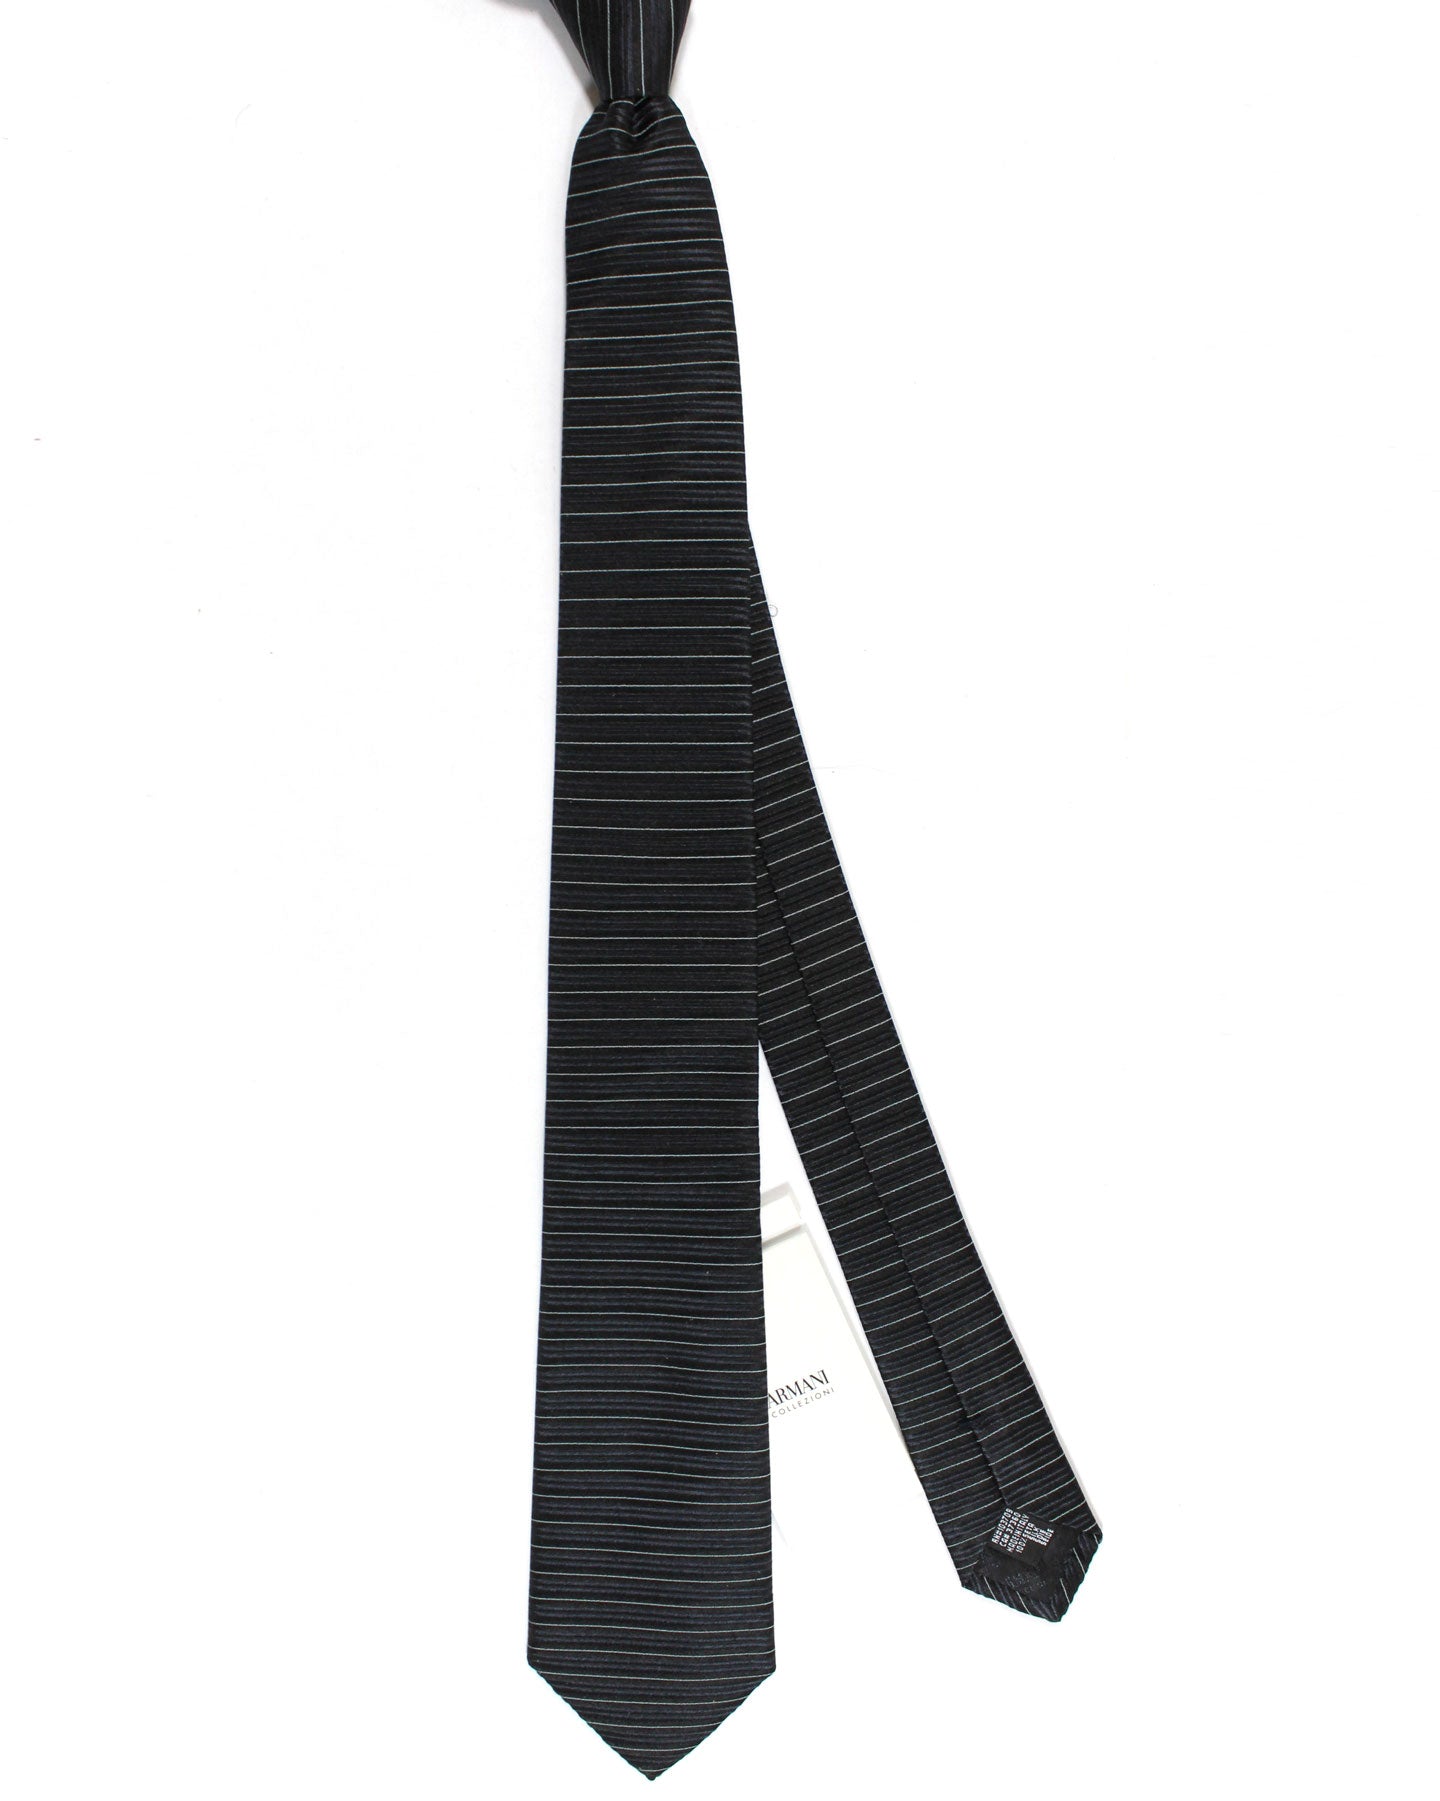 Armani Silk Tie Black Gray Silver Horizontal Stripes Armani Collezioni